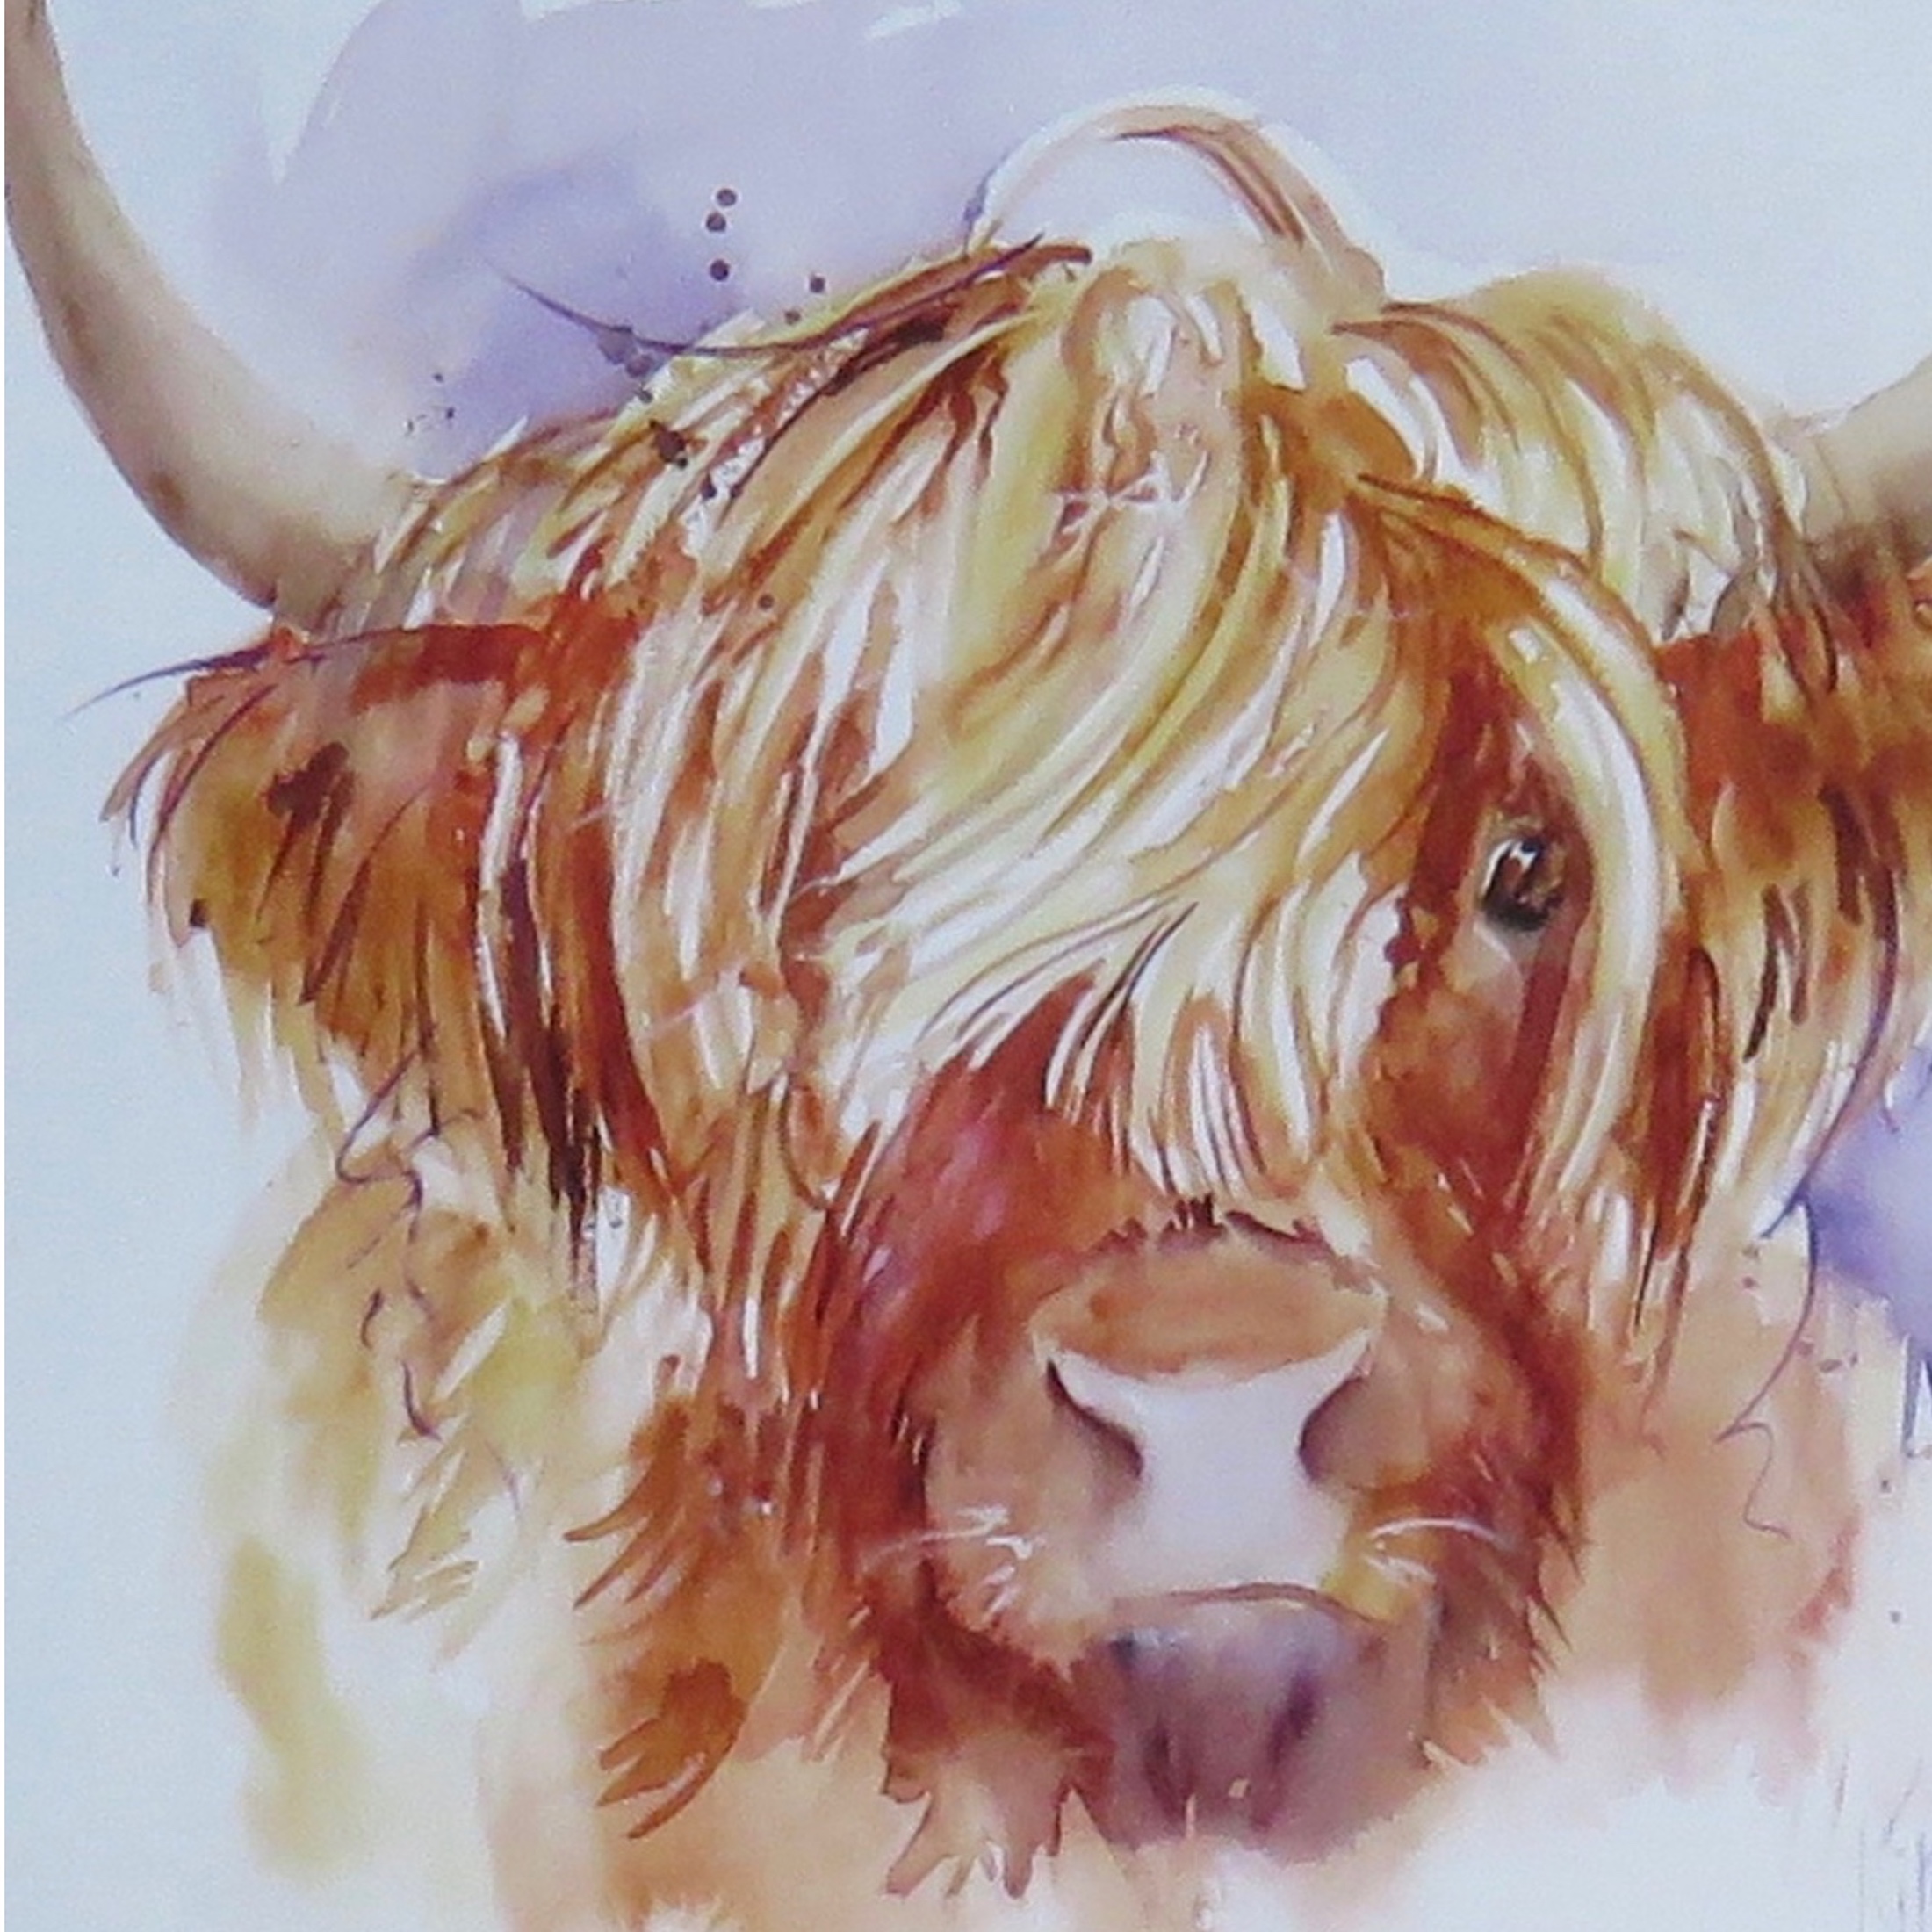 Hairy Highland Cow card